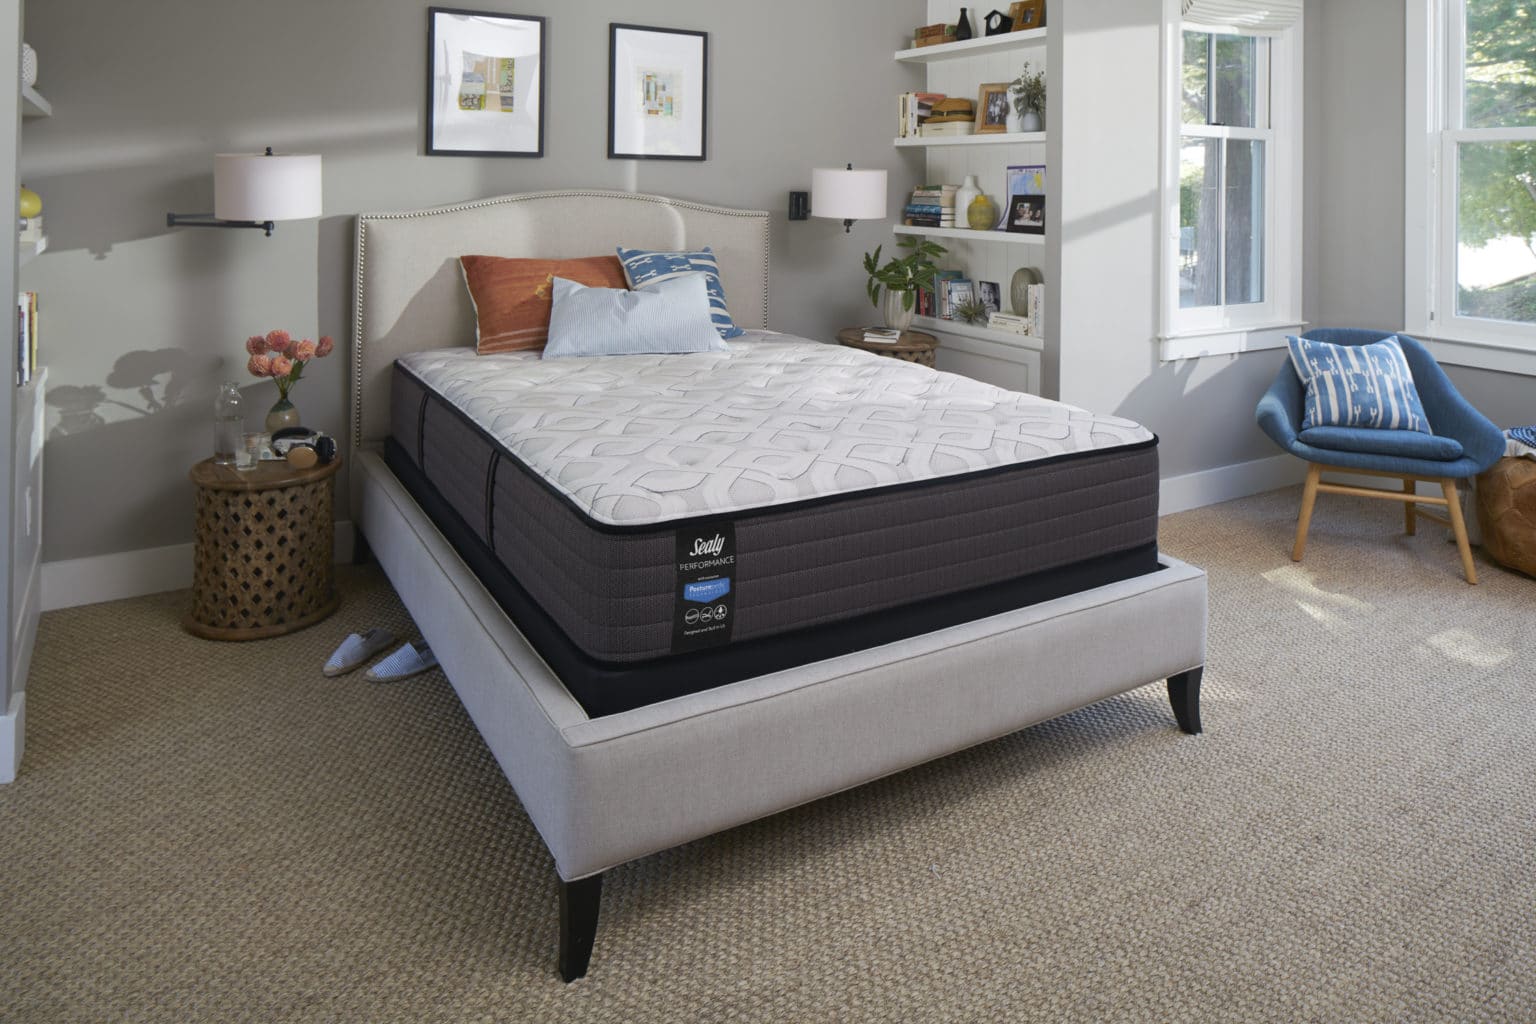 beutyrest bps900c-tss plush mattress review